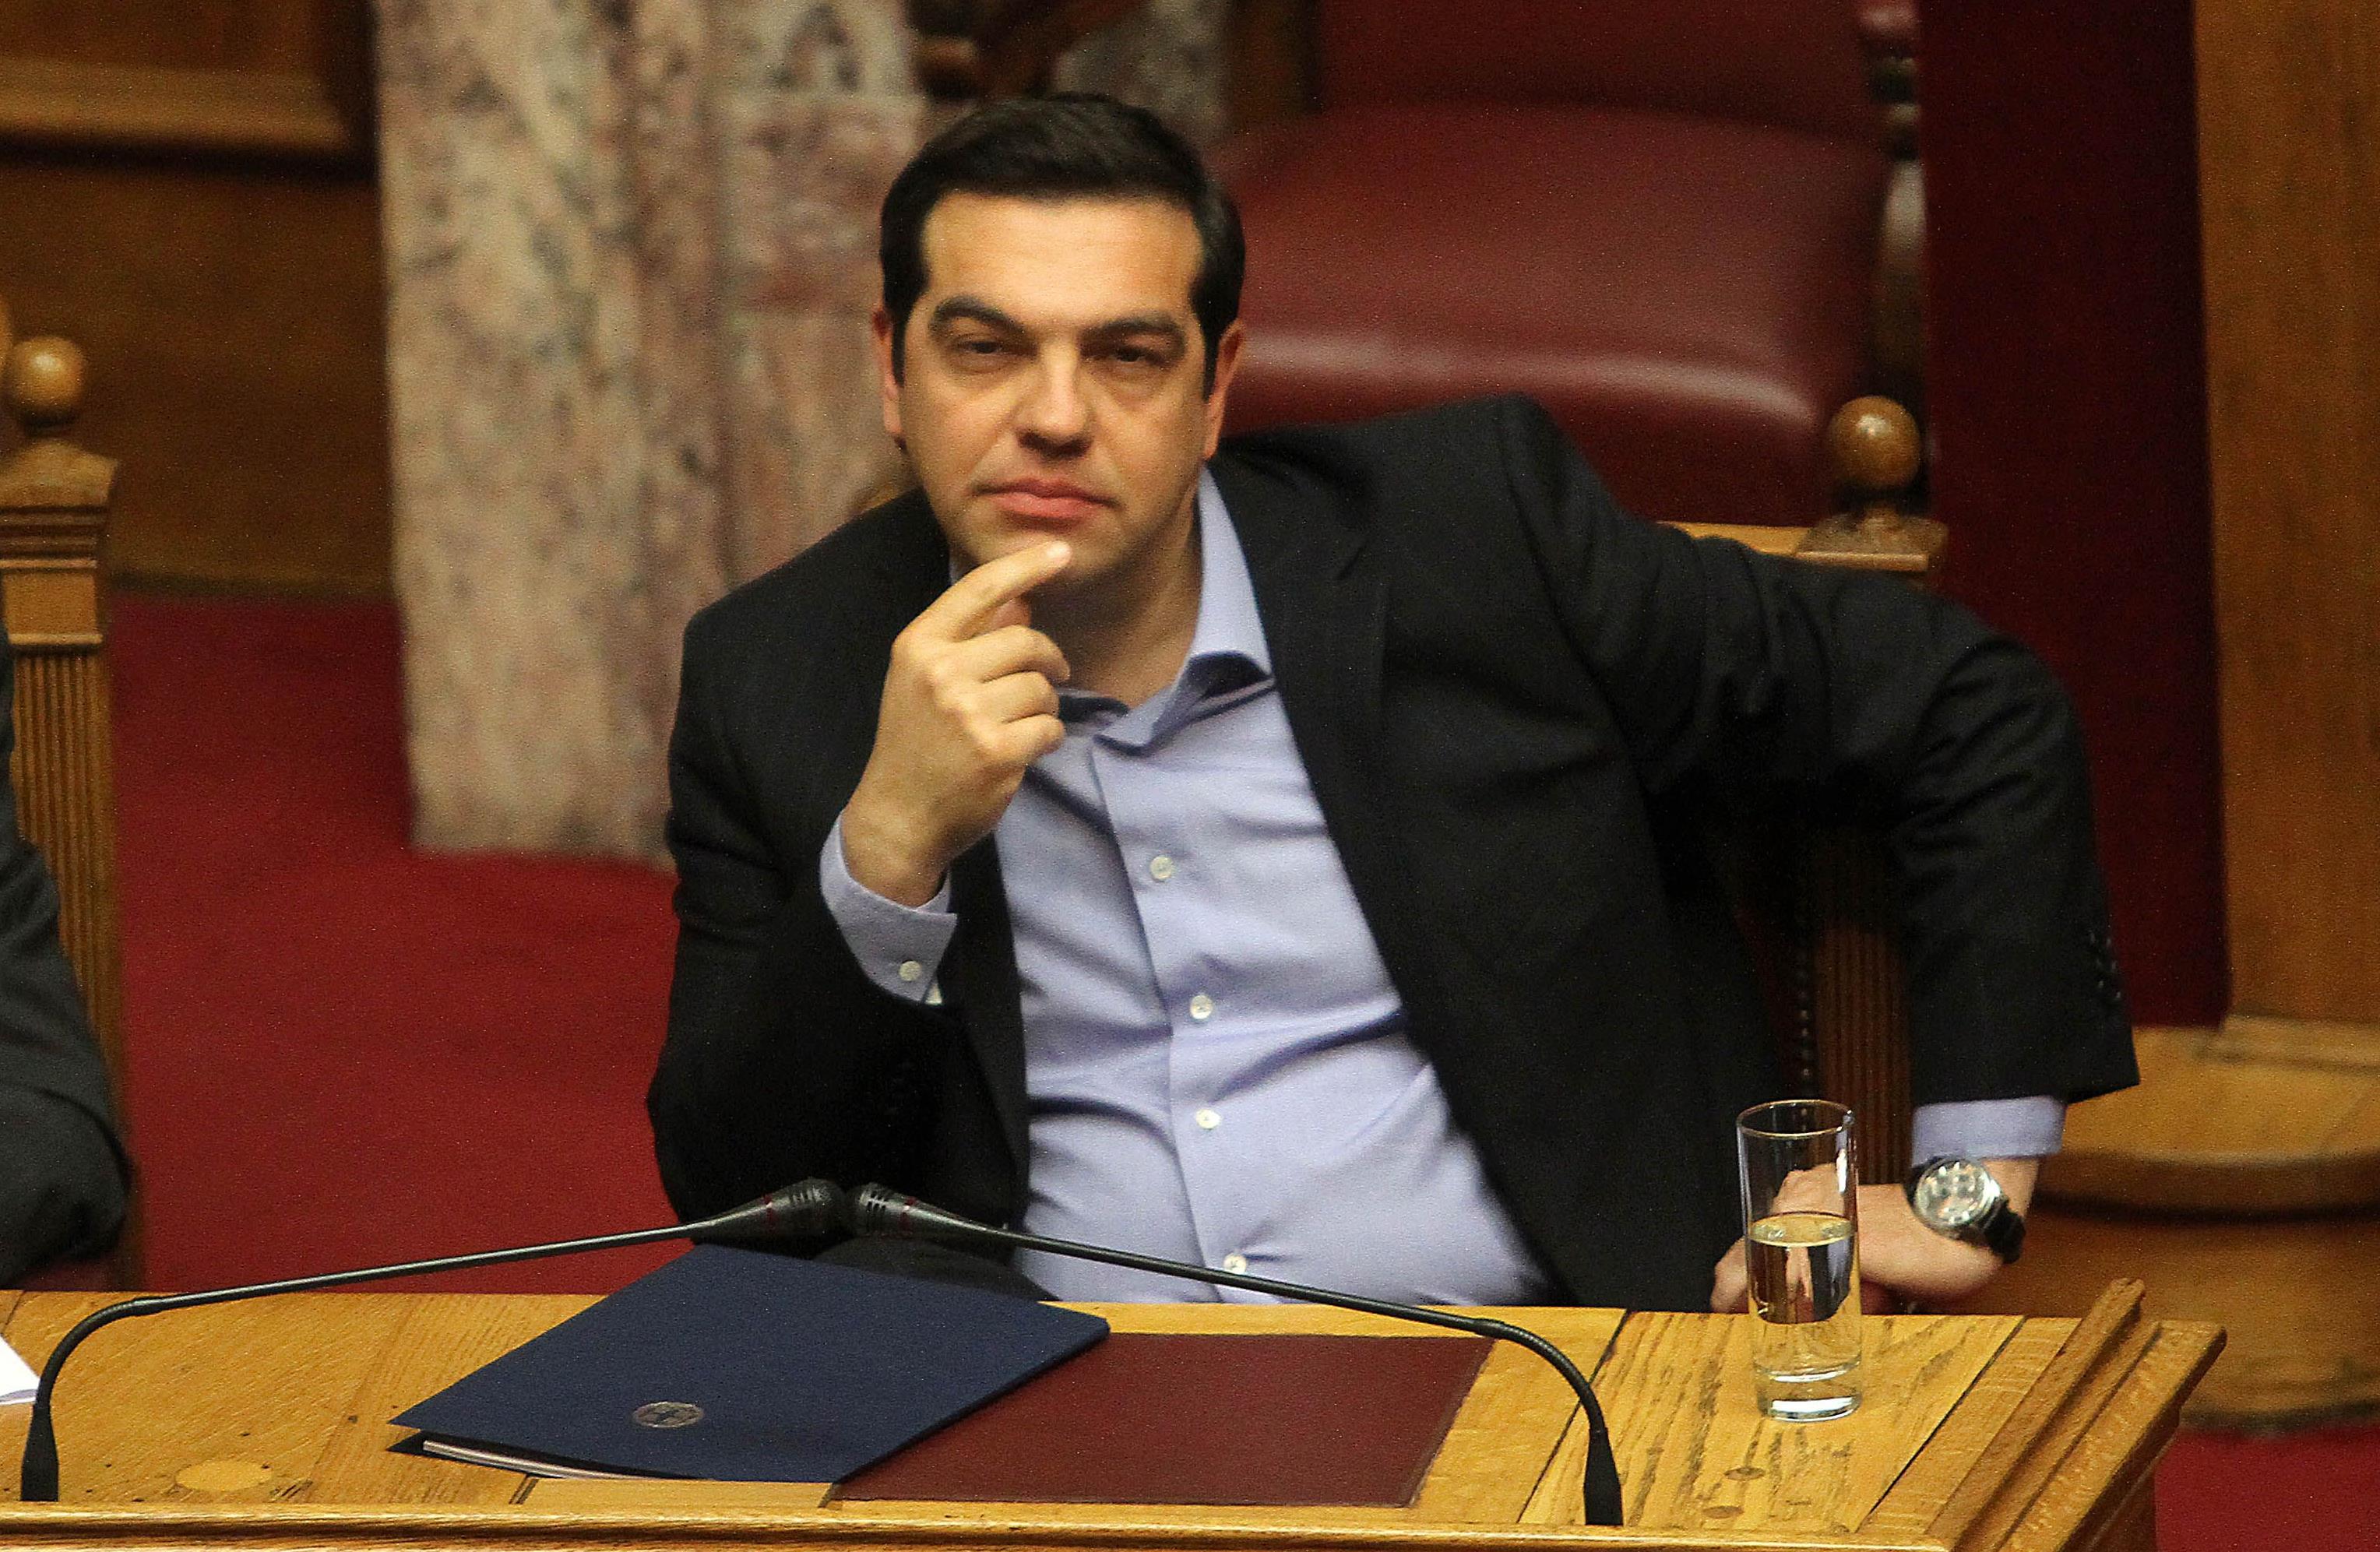 Η εφαρμογή της συμφωνίας φαίνεται να οδηγεί σε αναβολή το συνέδριο ΣΥΡΙΖΑ